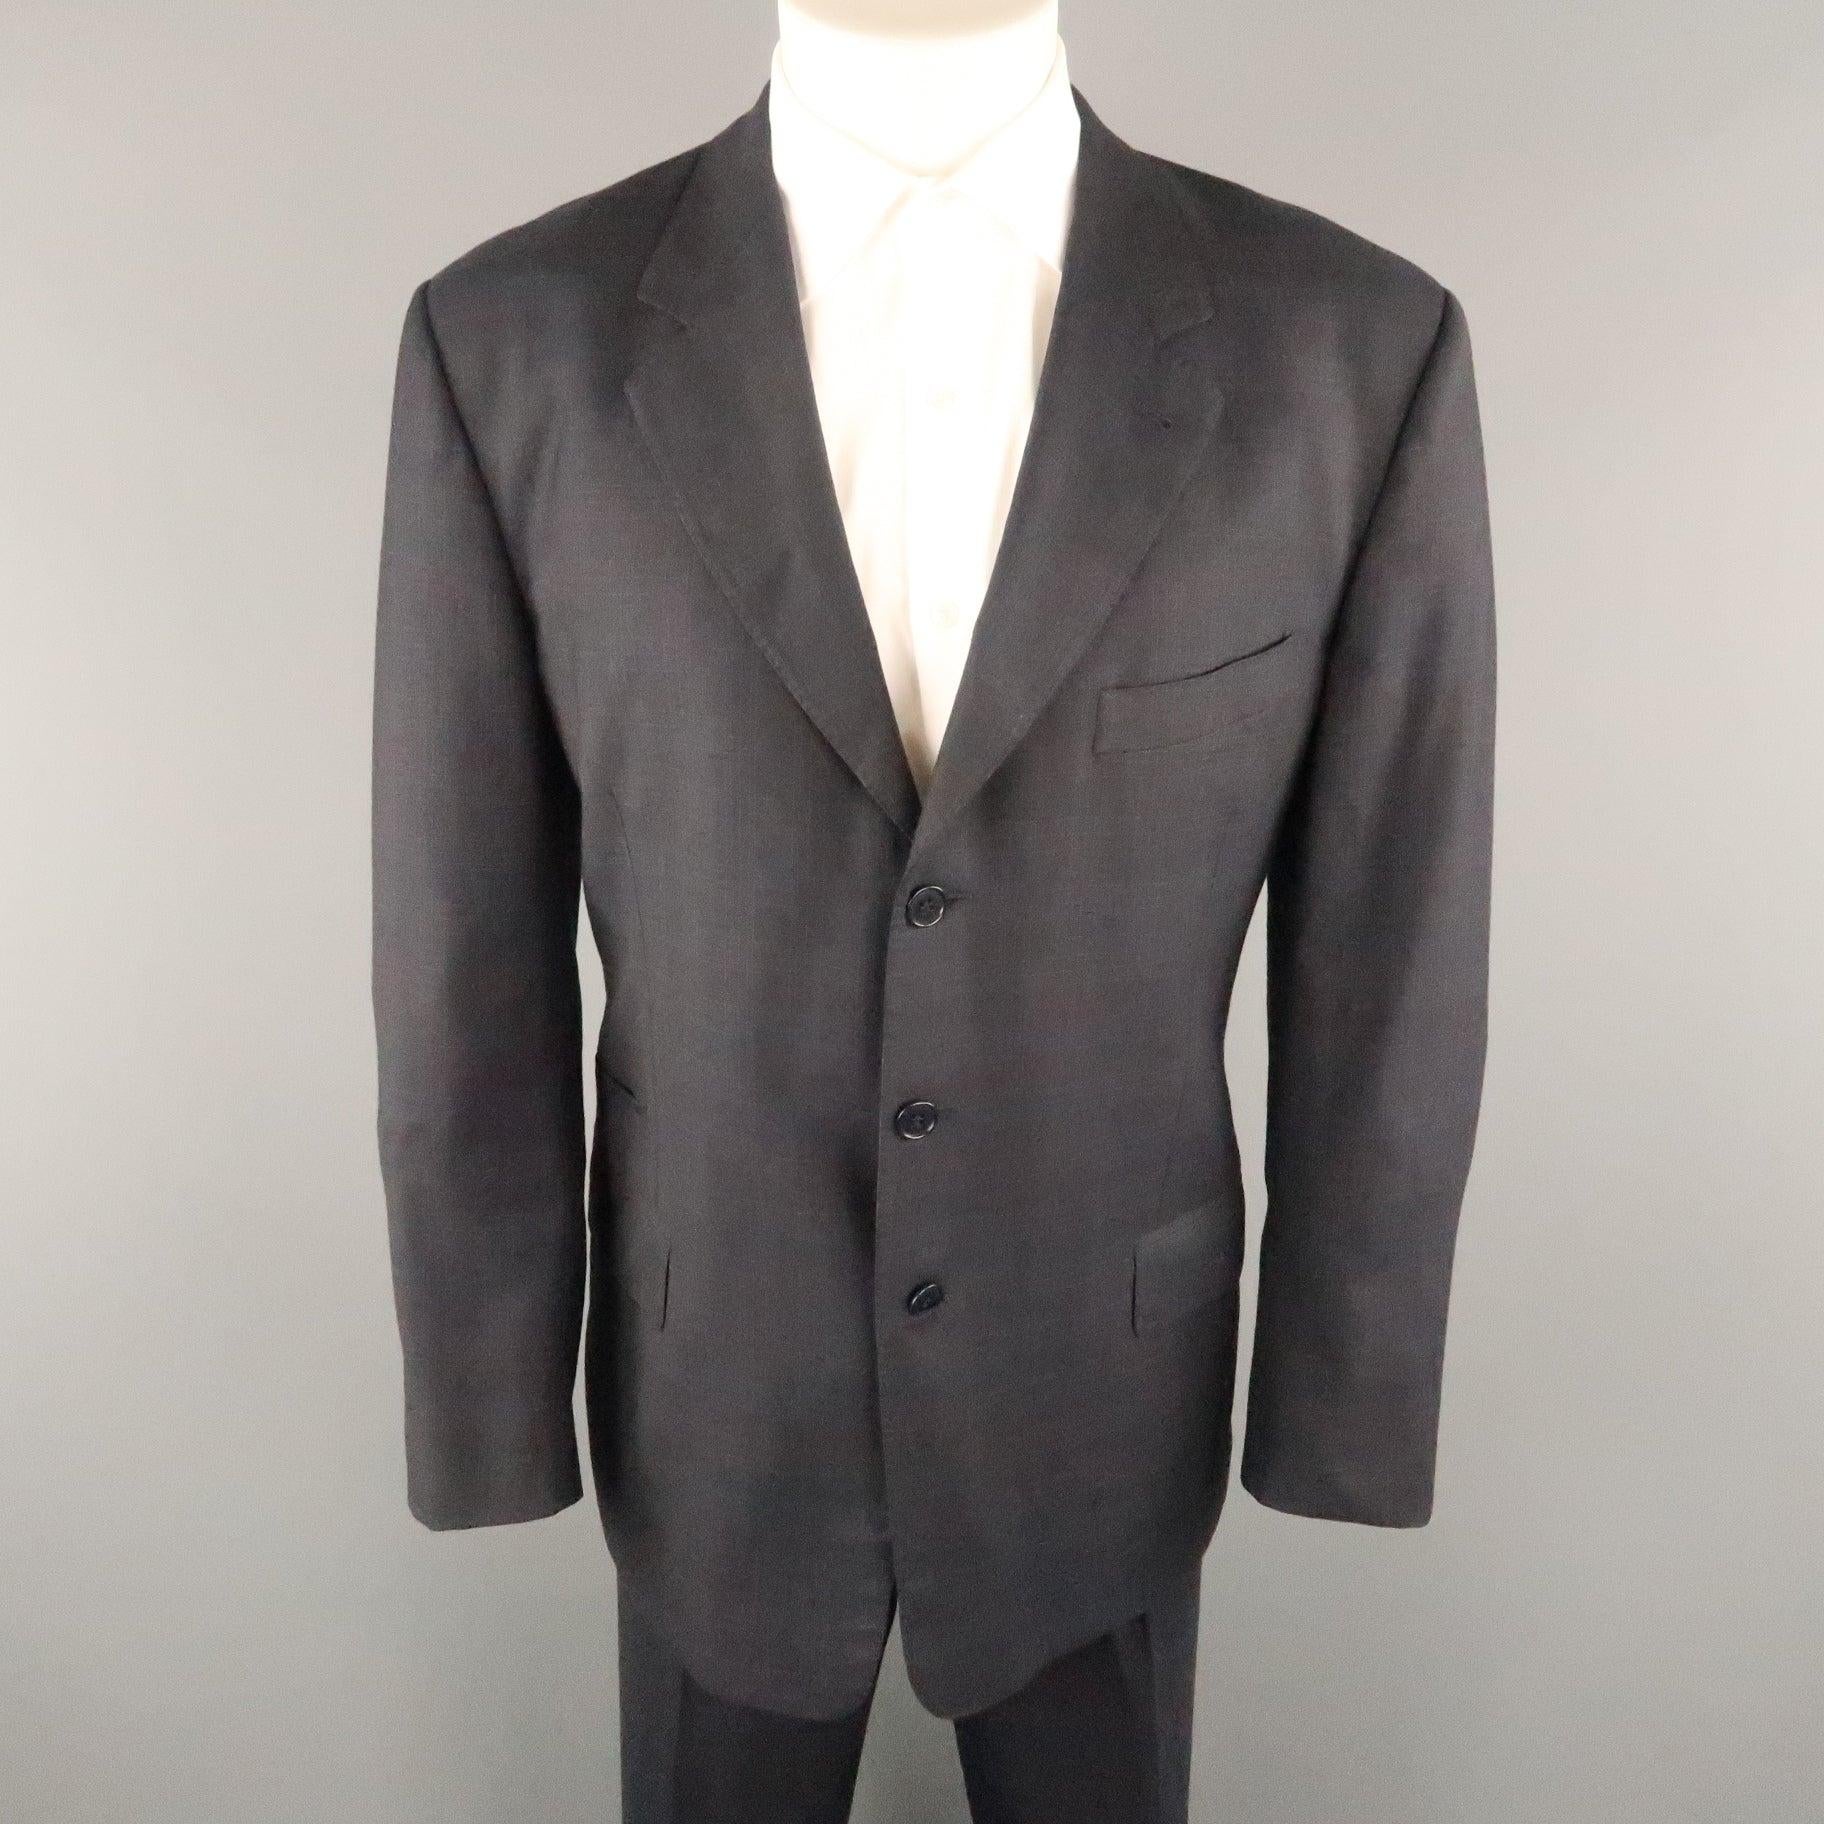 Der Anzug von PAUL SMITH ist aus anthrazitfarbener, karierter Wolle gefertigt und verfügt über ein Revers mit Kerbe, drei Knöpfe, Pattentaschen und eine passende Hose im flachen Stil. Hergestellt in Italien. 
Ausgezeichneter Pre-Owned Zustand.
